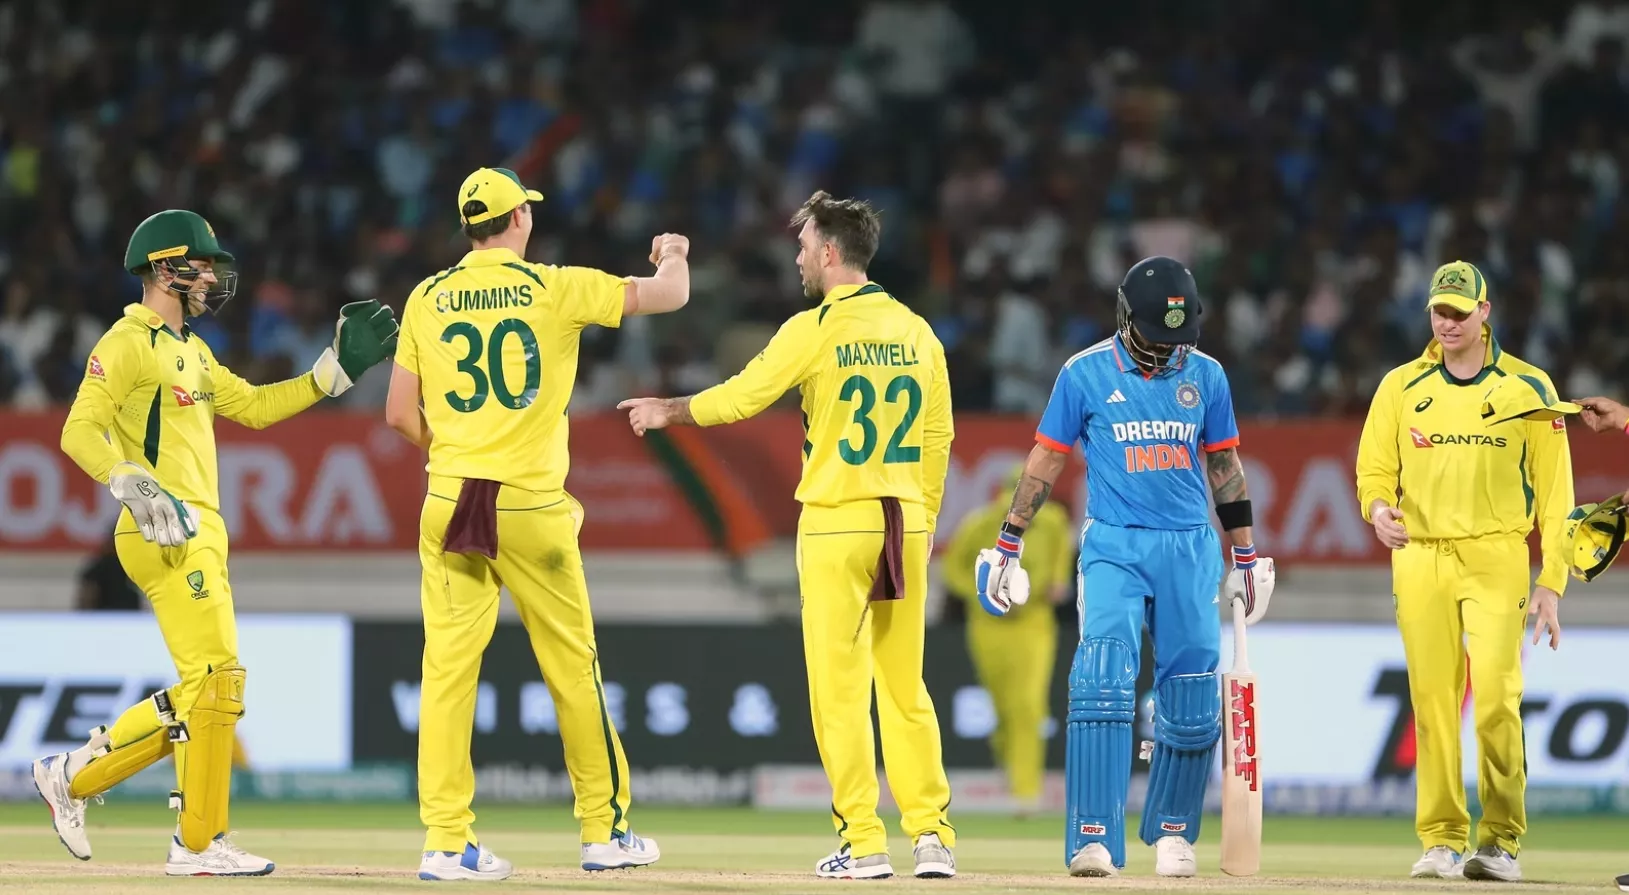 IND vs AUS: ऑस्ट्रेलिया ने 66 रन से तीसरा वनडे जीतकर बचाई अपनी इज्जत, भारत ने गंवाया क्लीन स्वीप का मौका